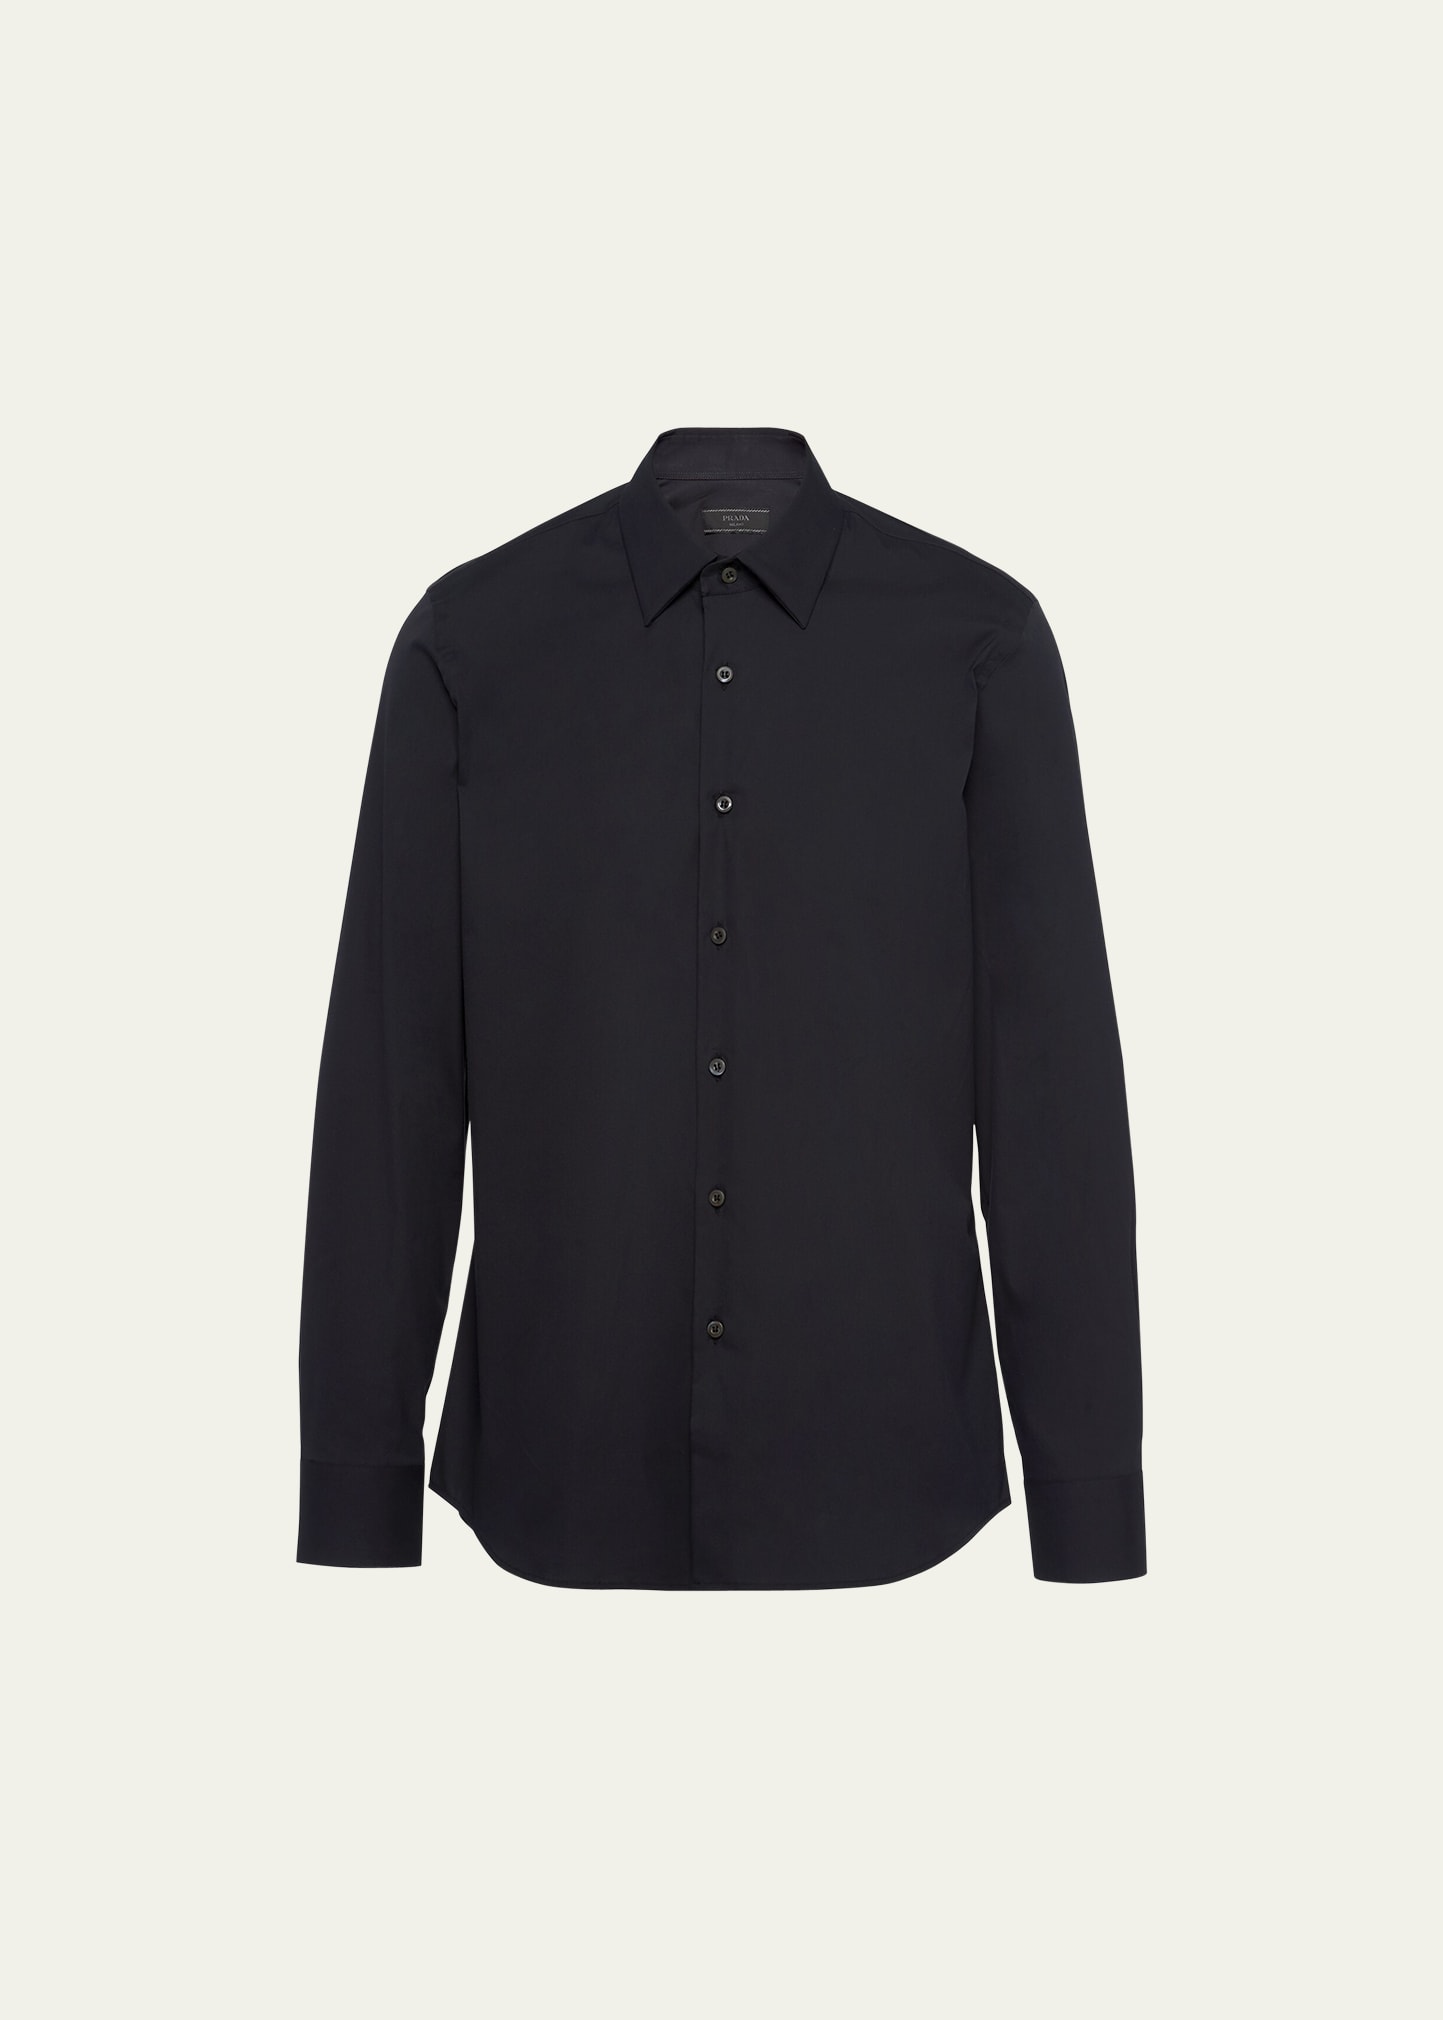 Prada Men's Classic Stretch Poplin Sport Shirt In Black